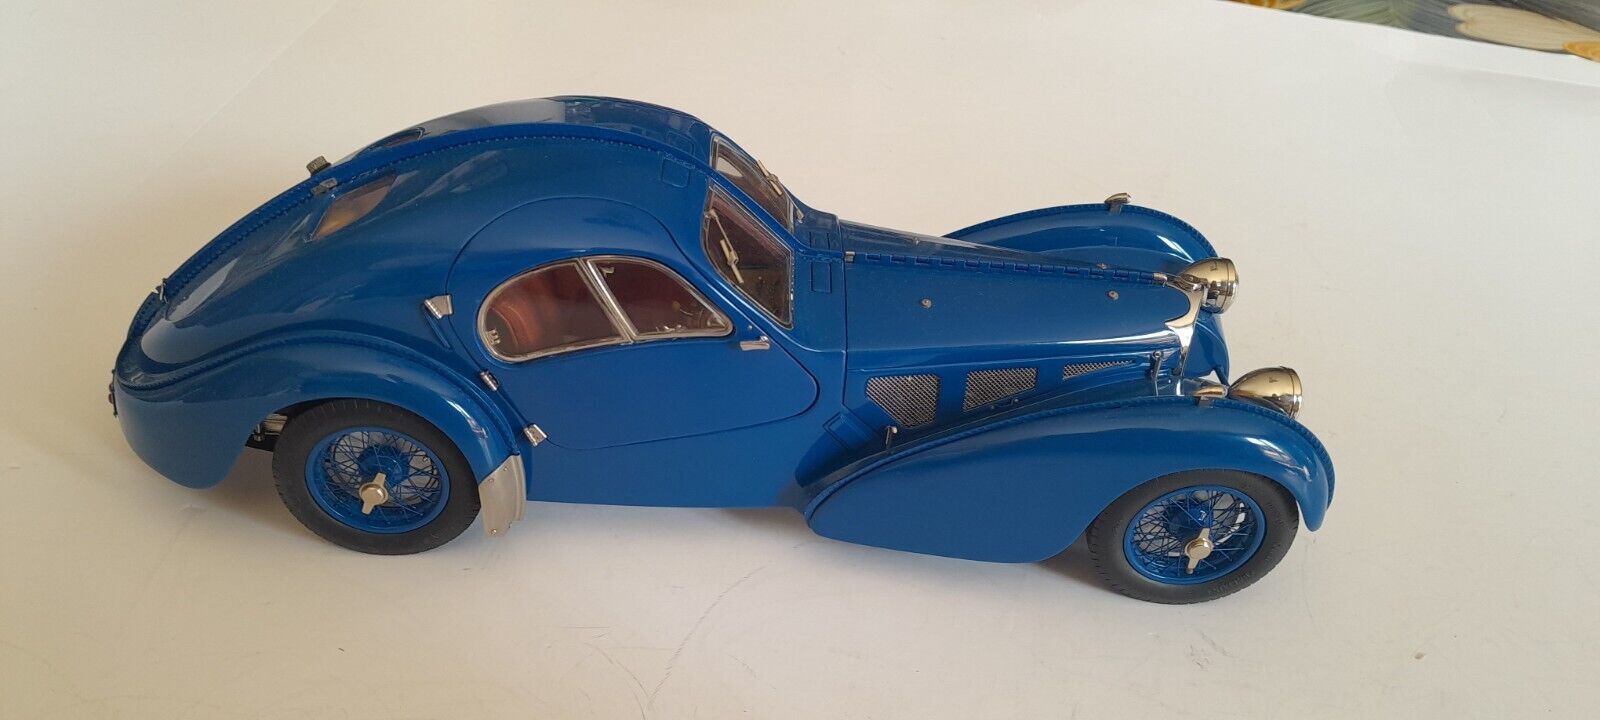 modelstore BugattiPage